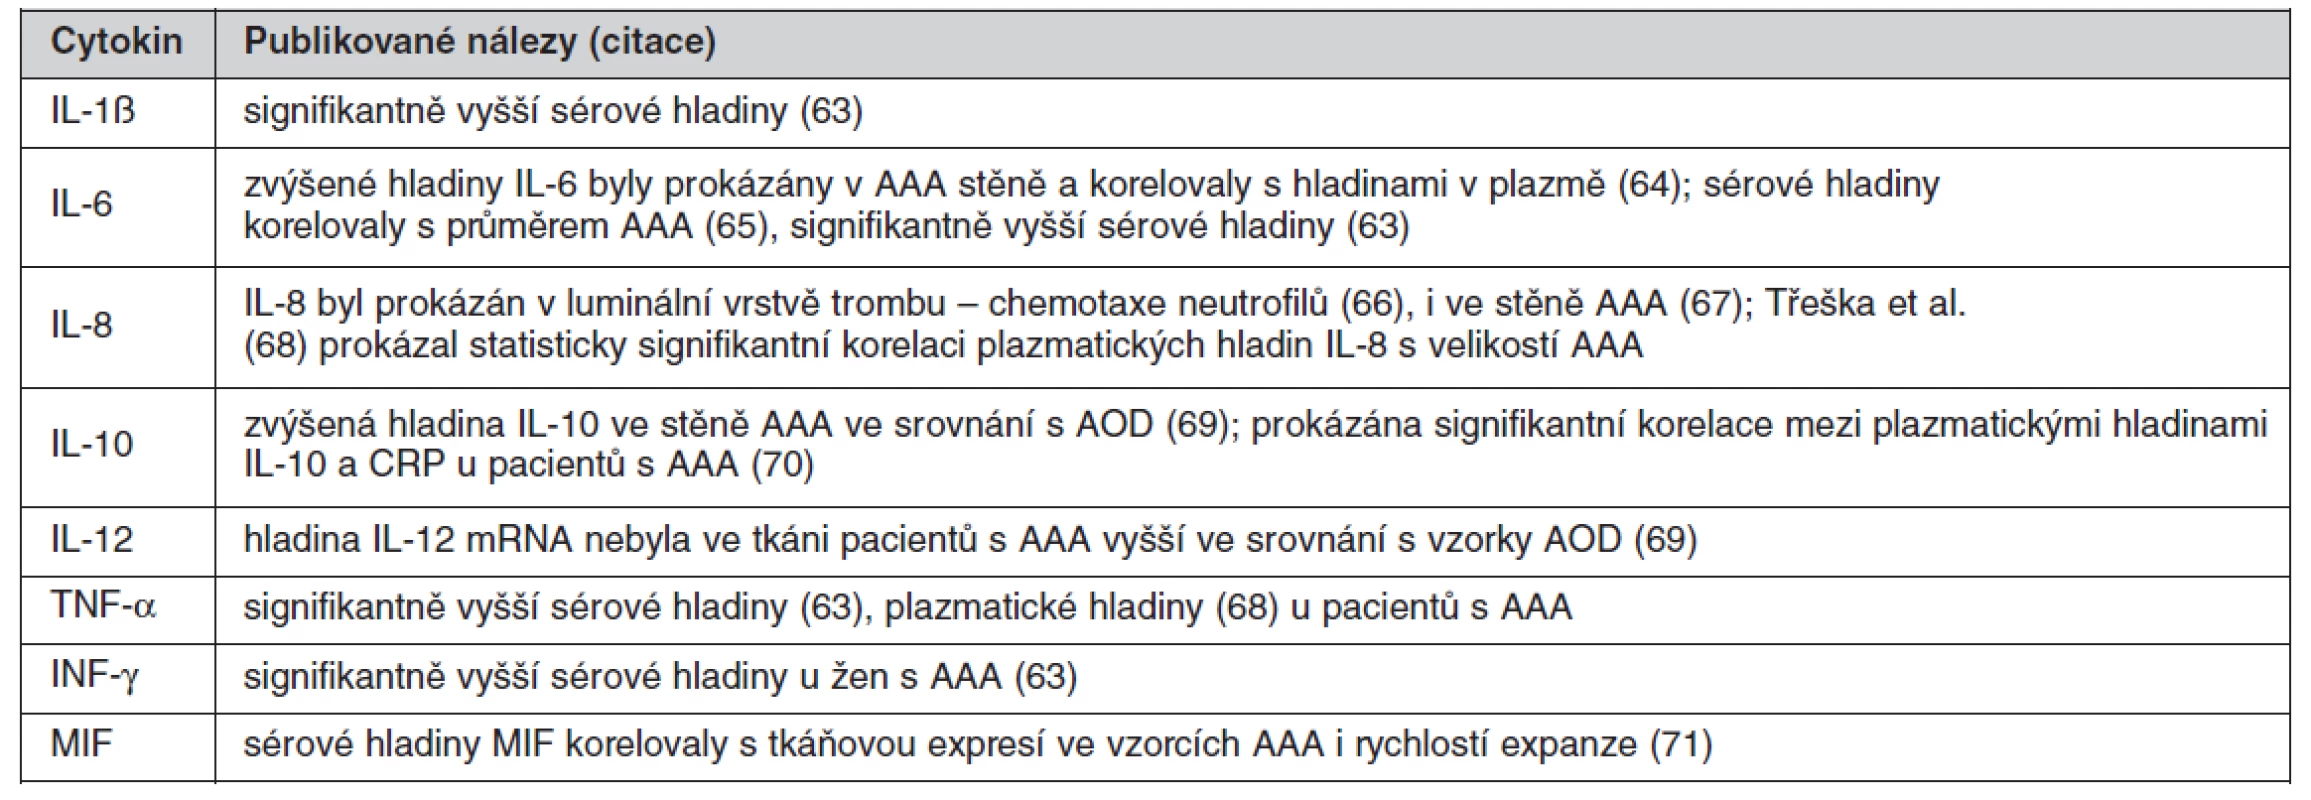 Přehled cytokinů s prokázaným vztahem k AAA